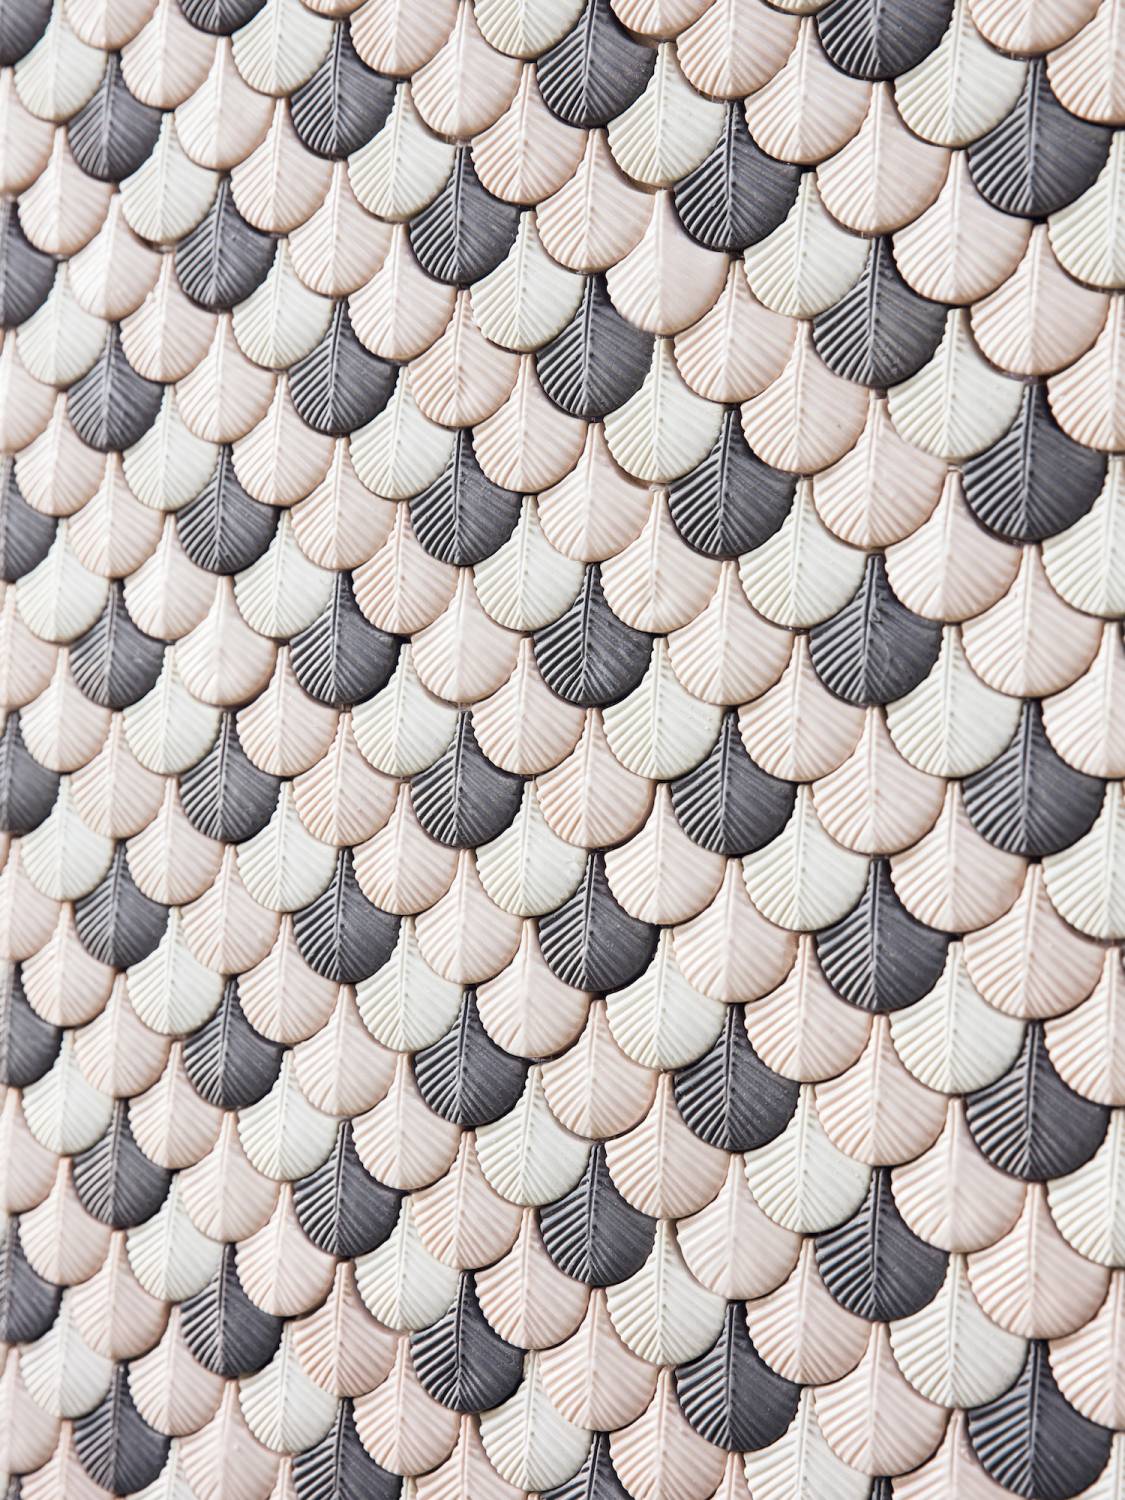 Plumage mosaic tiles by Cristina Celestino | Flodeau.com